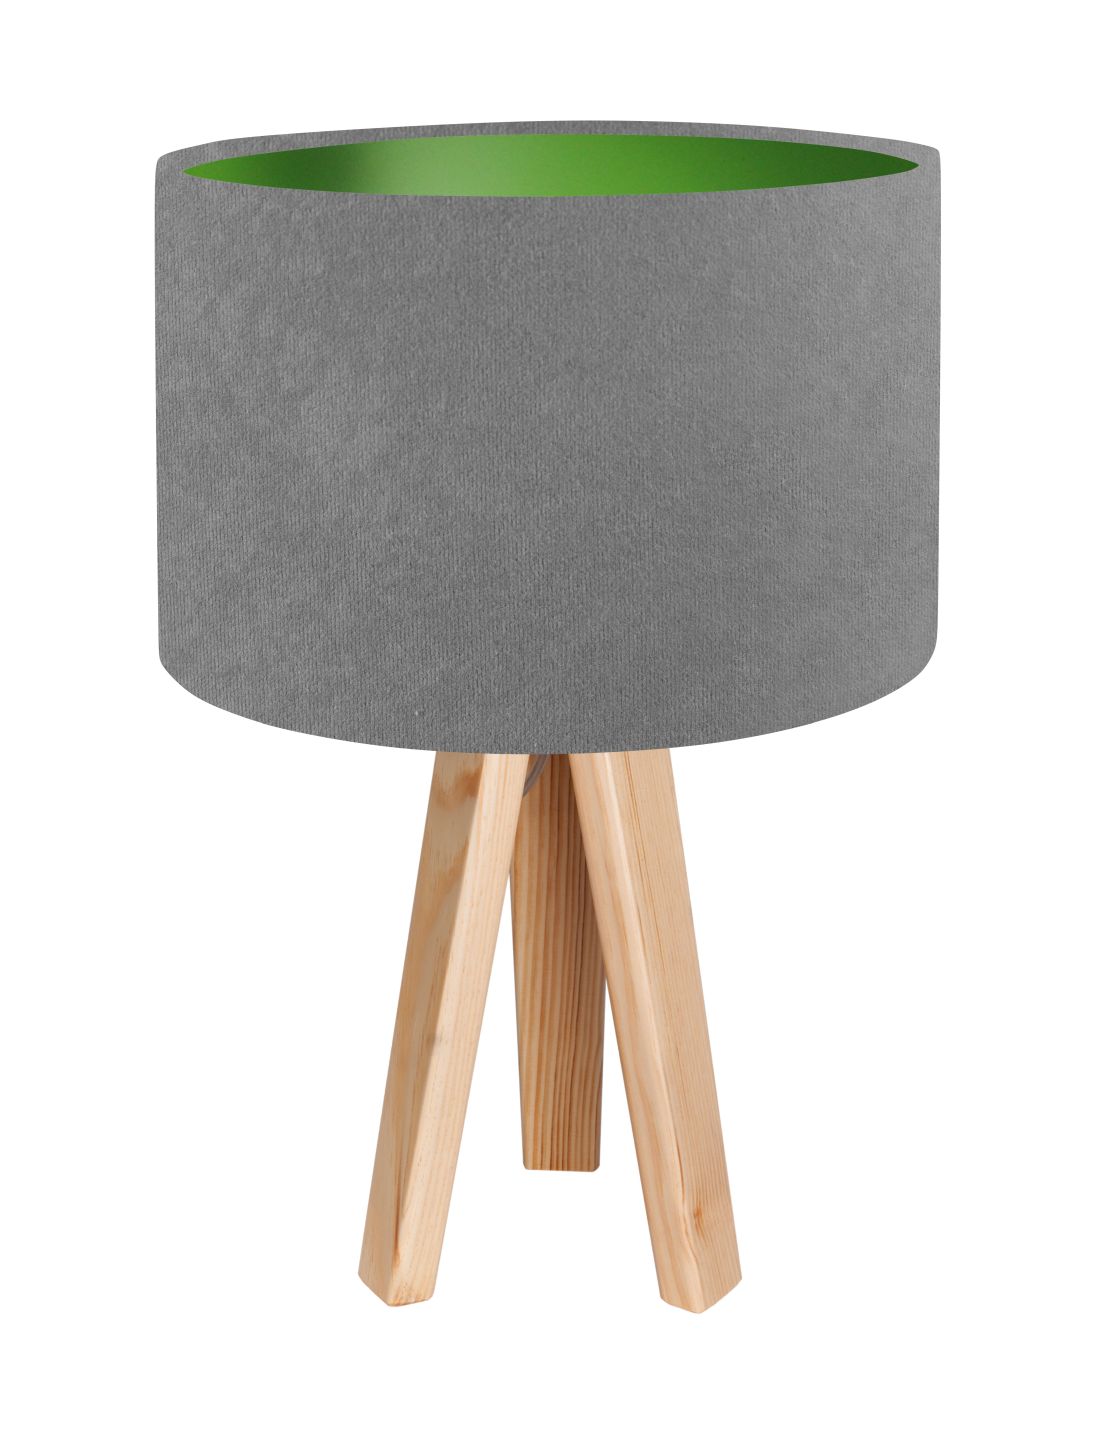 Tischleuchte Grau Grün Retro Dreibein 46cm Holz Lampe